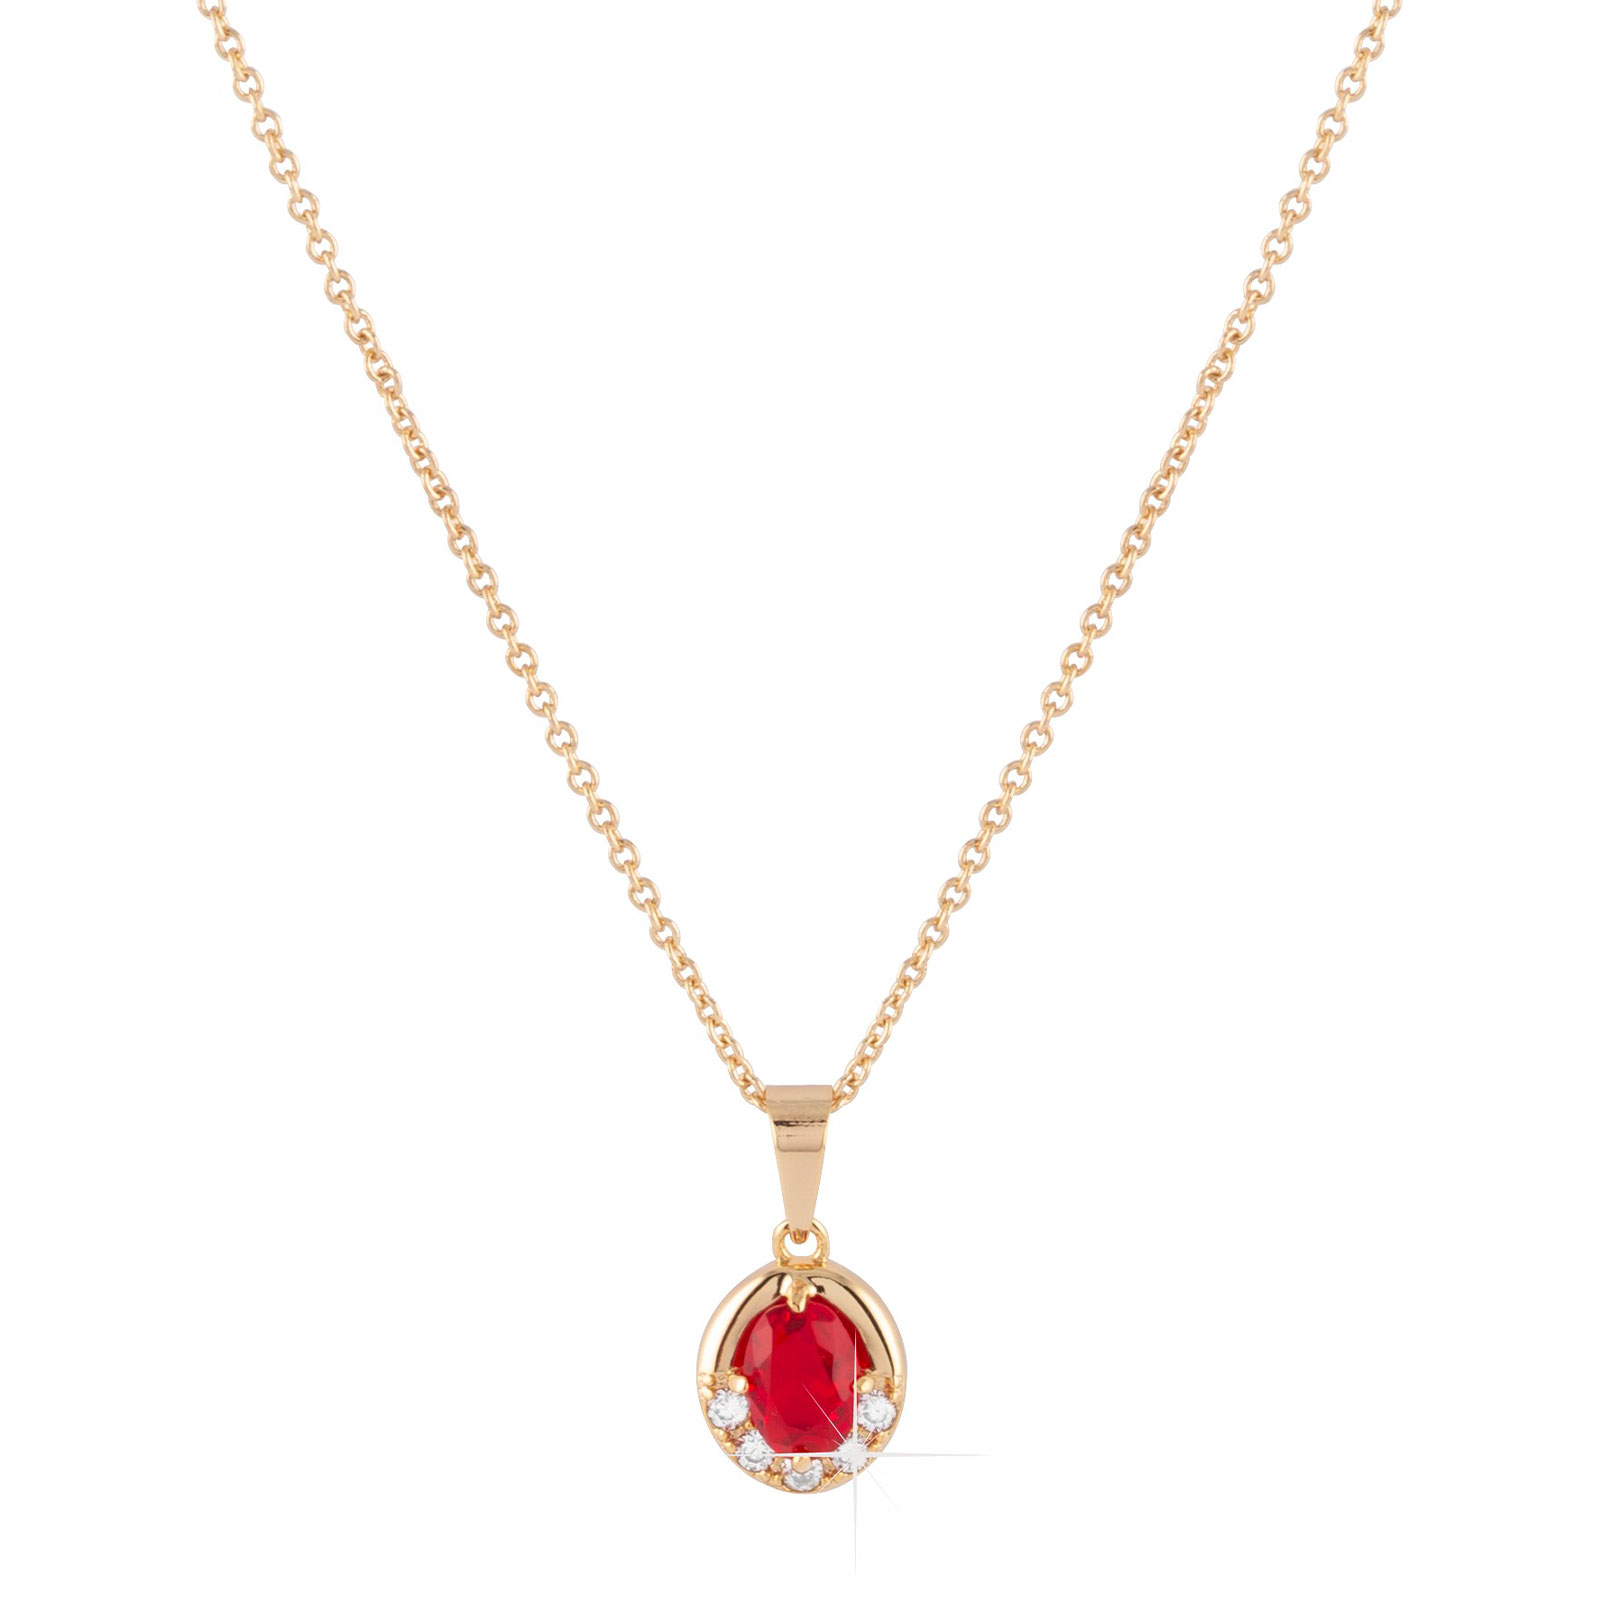 Guldpläterat halsband - Berlock med röda och vita Kubisk Zirkonia